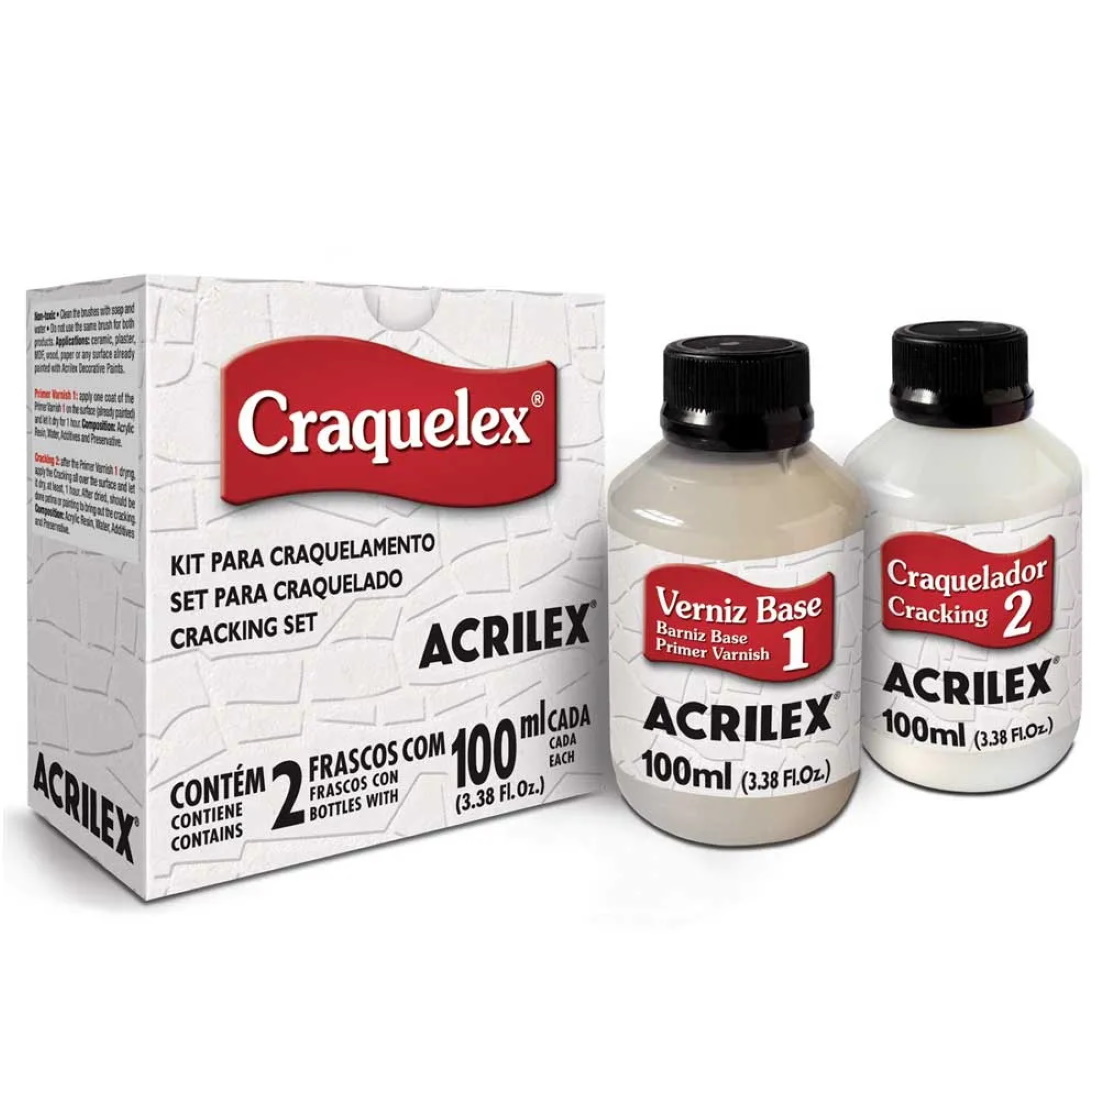 Kit para Craquelamento Craquelex Acrilex